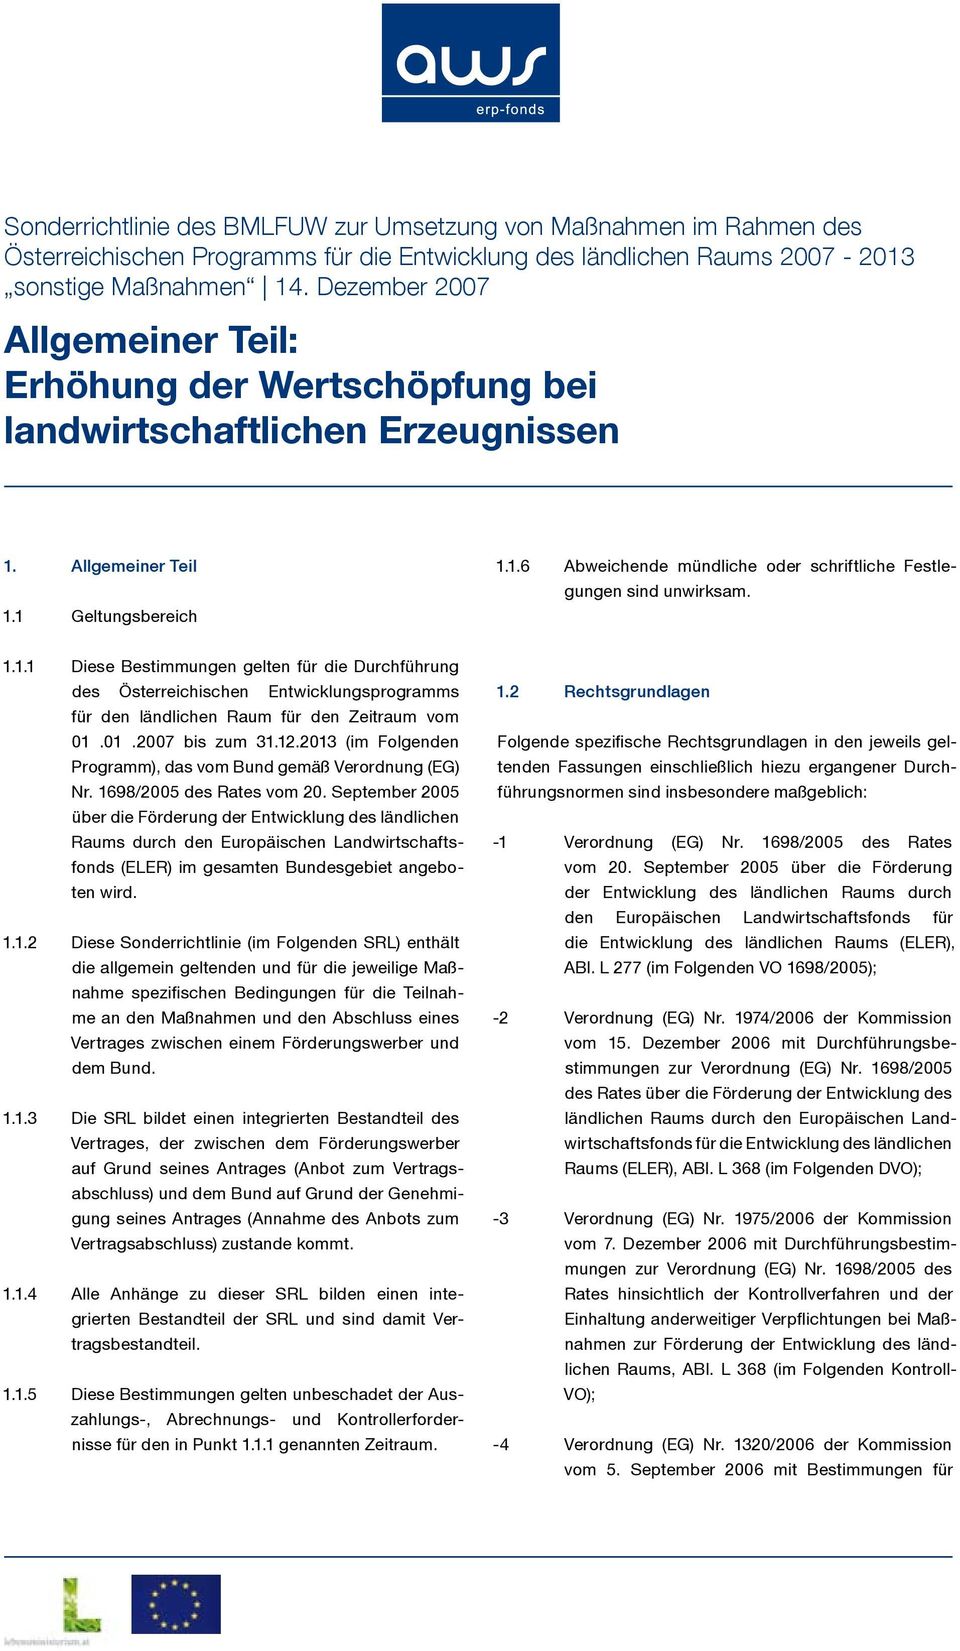 1.1.1 Diese Bestimmungen gelten für die Durchführung des Österreichischen Entwicklungsprogramms für den ländlichen Raum für den Zeitraum vom 01.01.2007 bis zum 31.12.